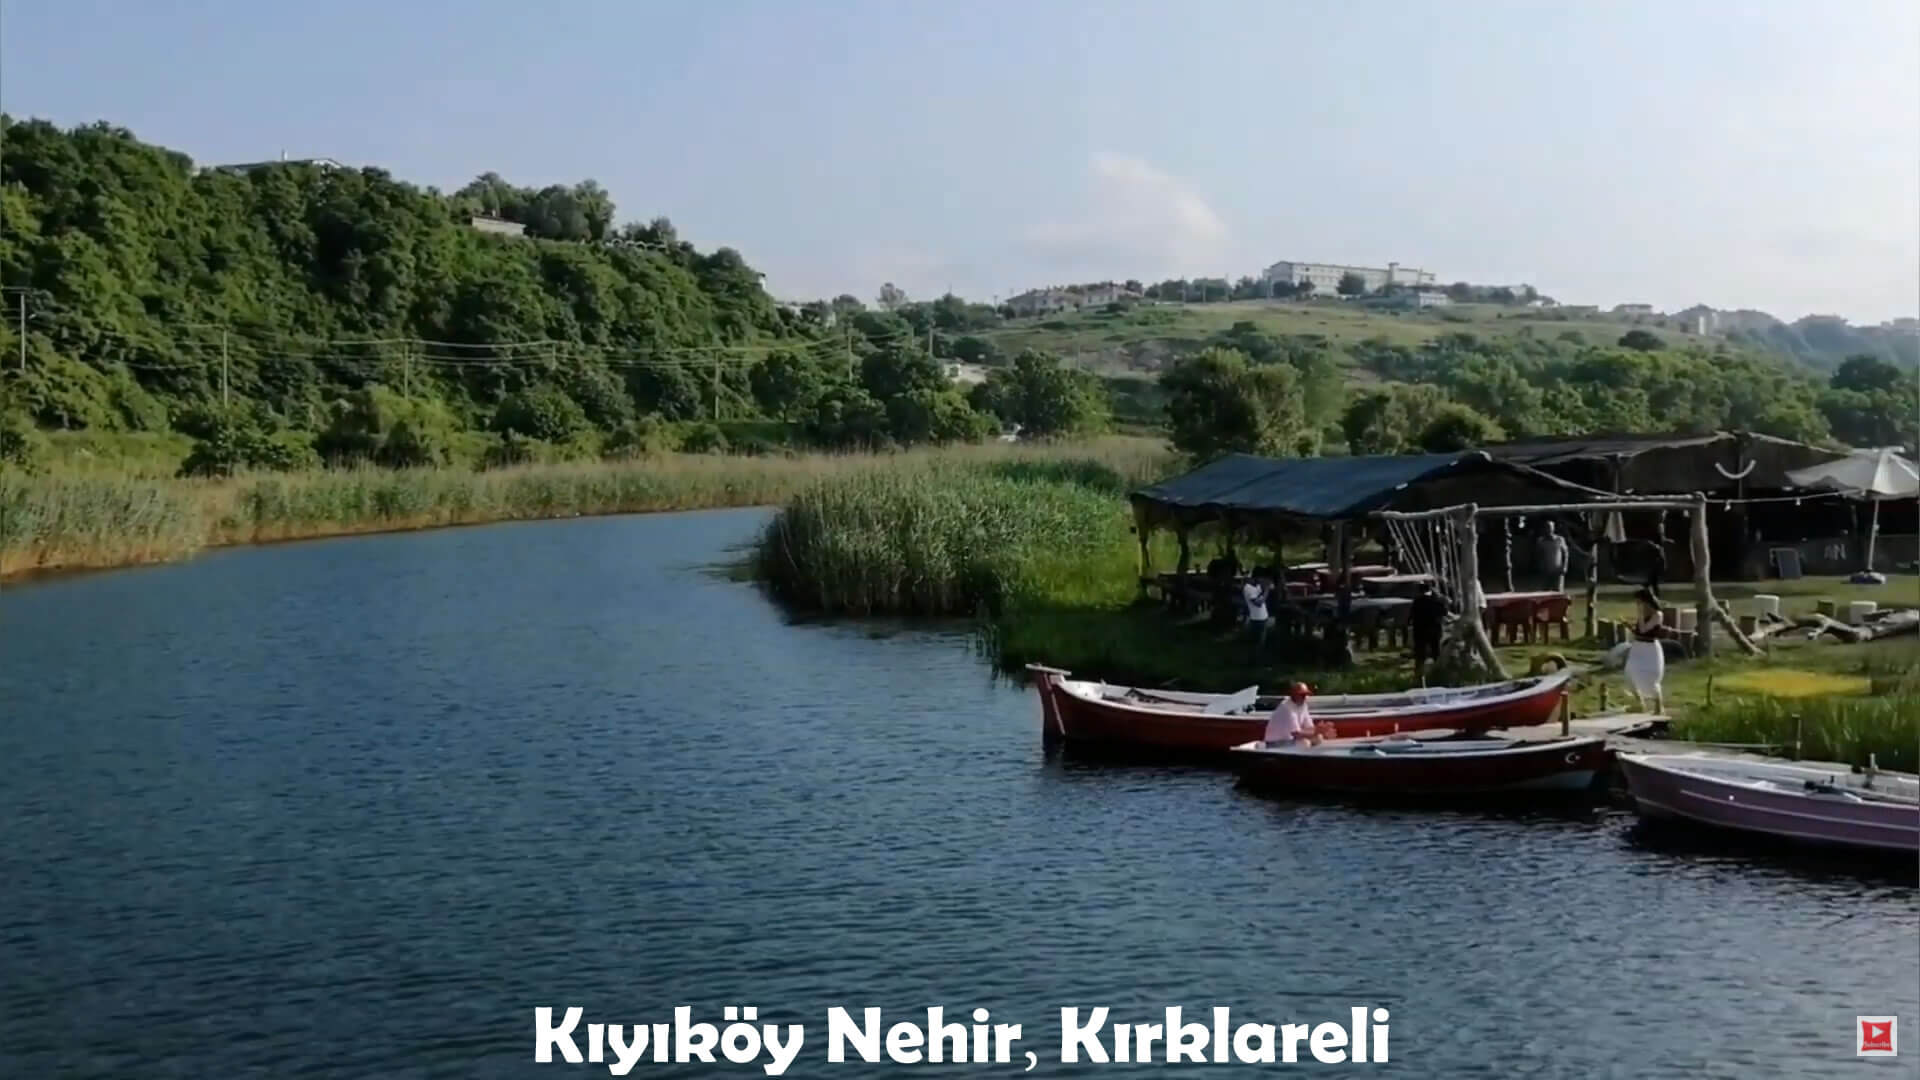 Kiyikoy River, Kirklareli